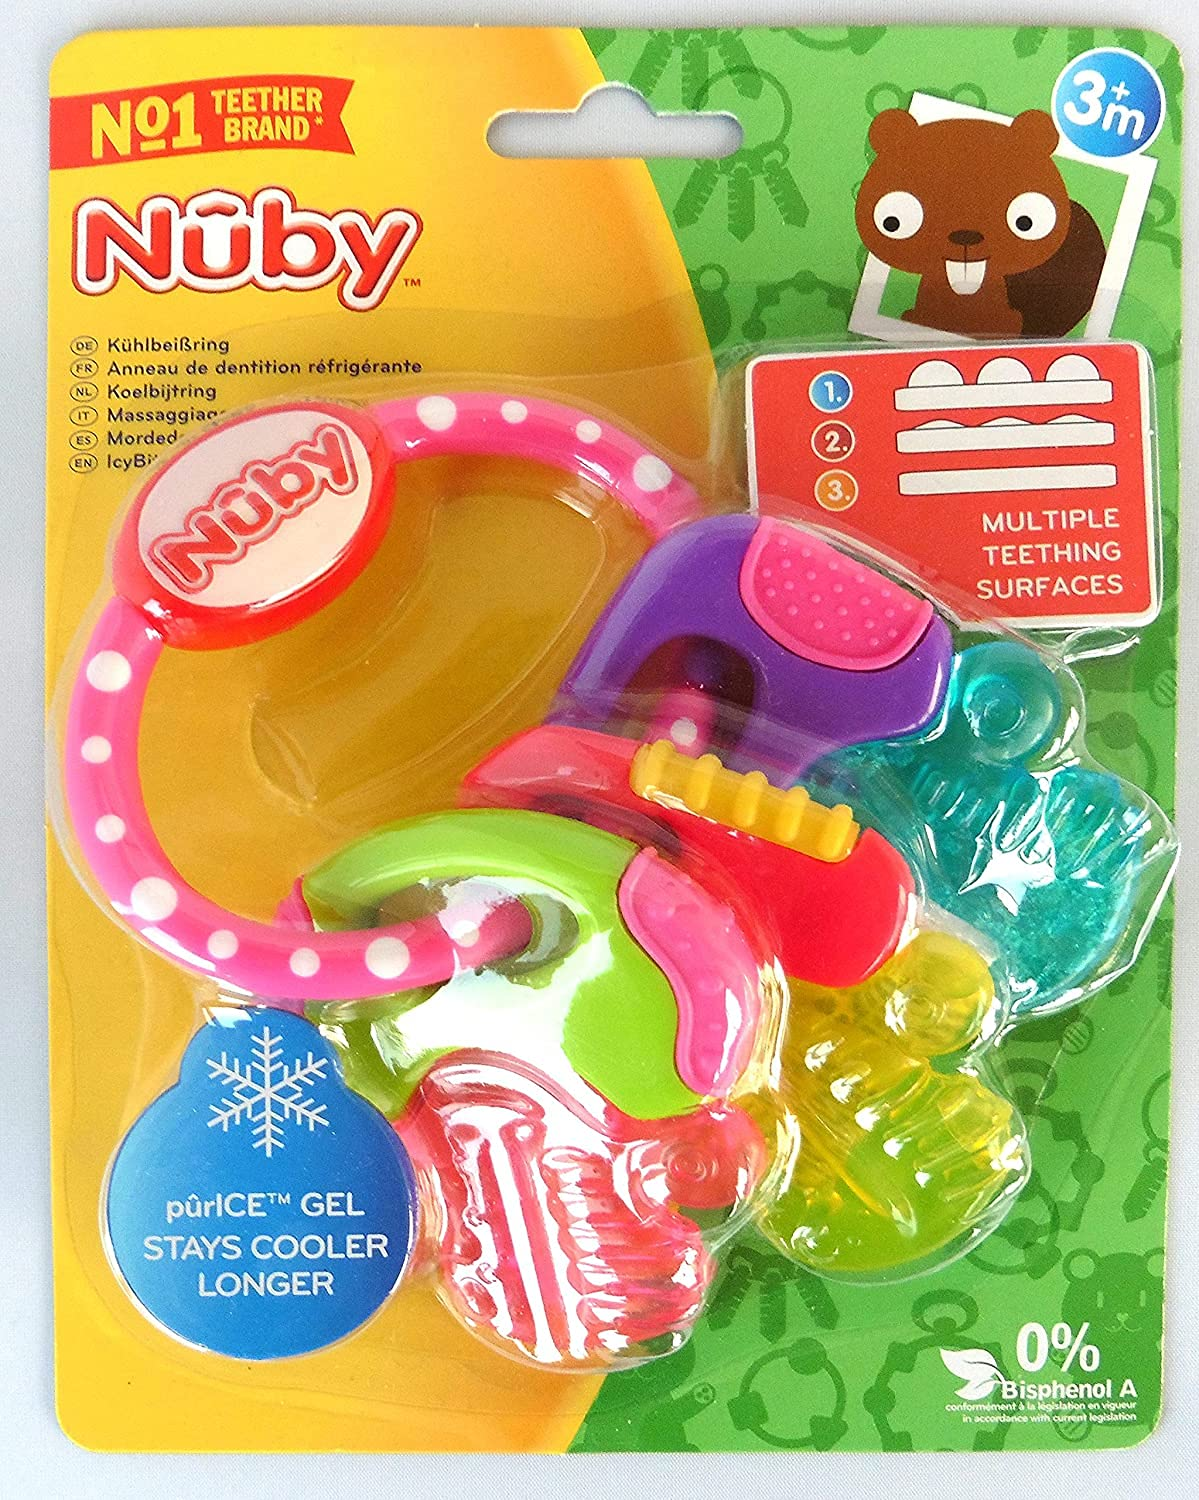 Nuby Ice Gel Teether Keys, 1 Pack Pink (567)